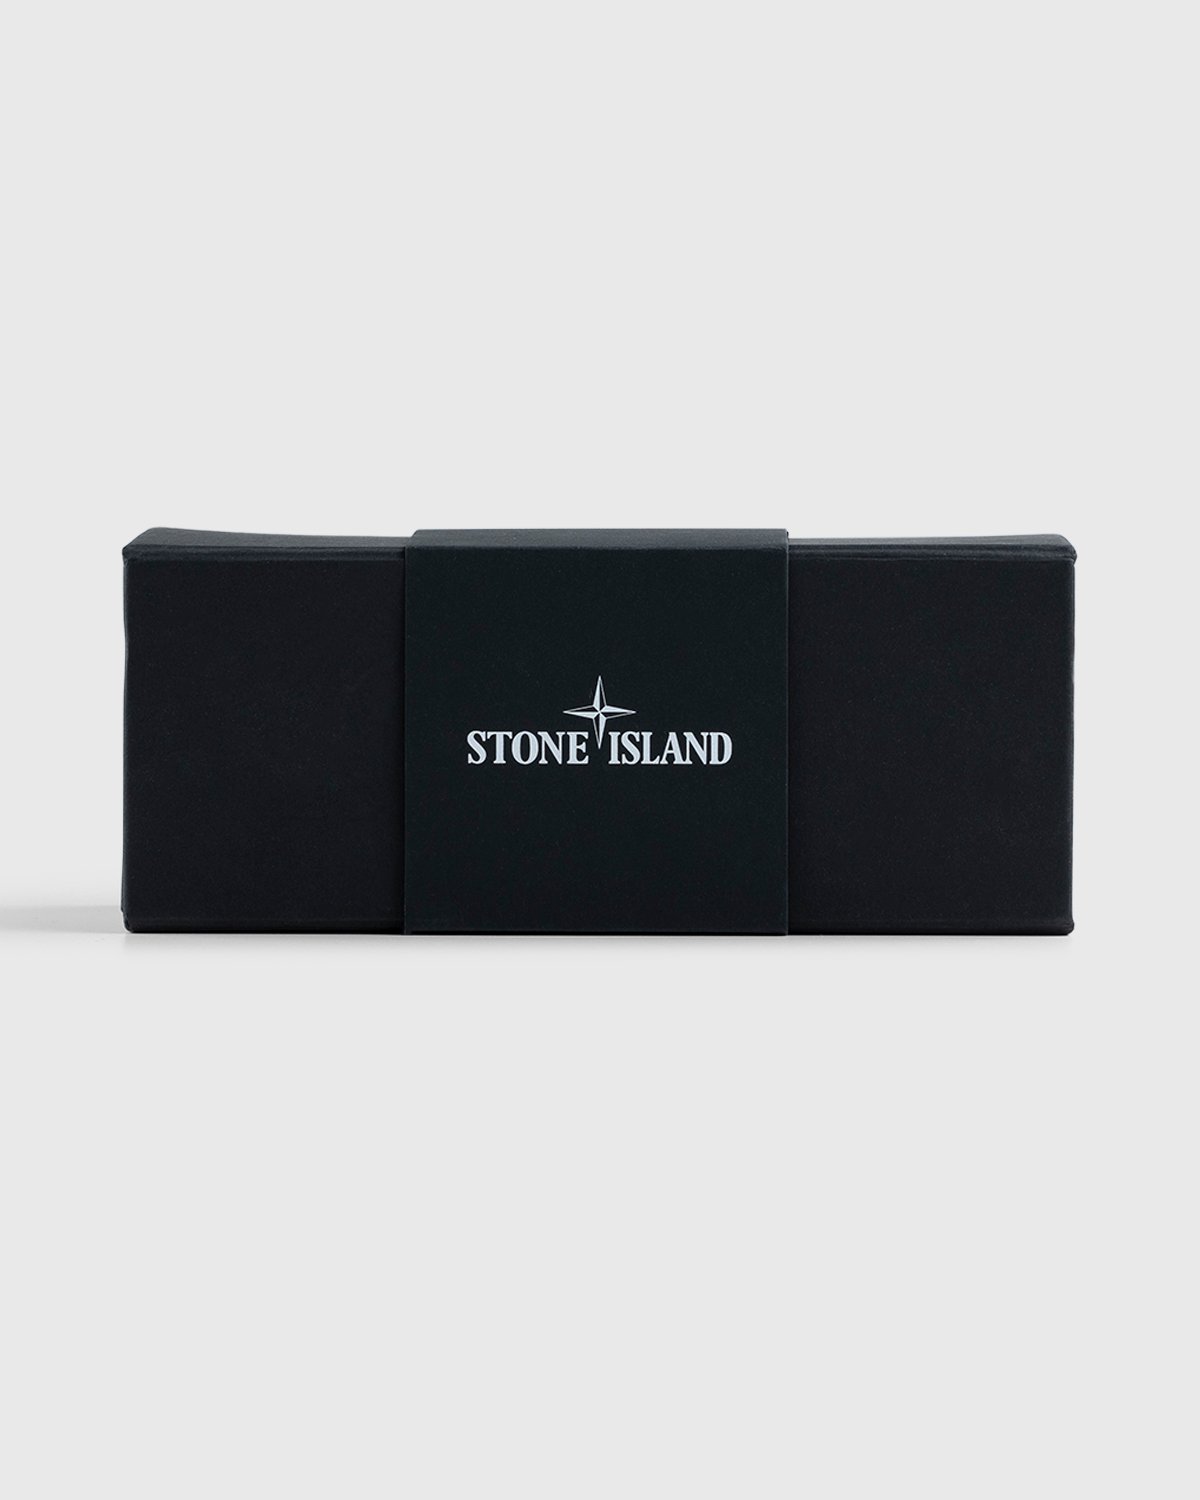 Stone Island - Clima Bottle Green - Lifestyle - Green - Image 6